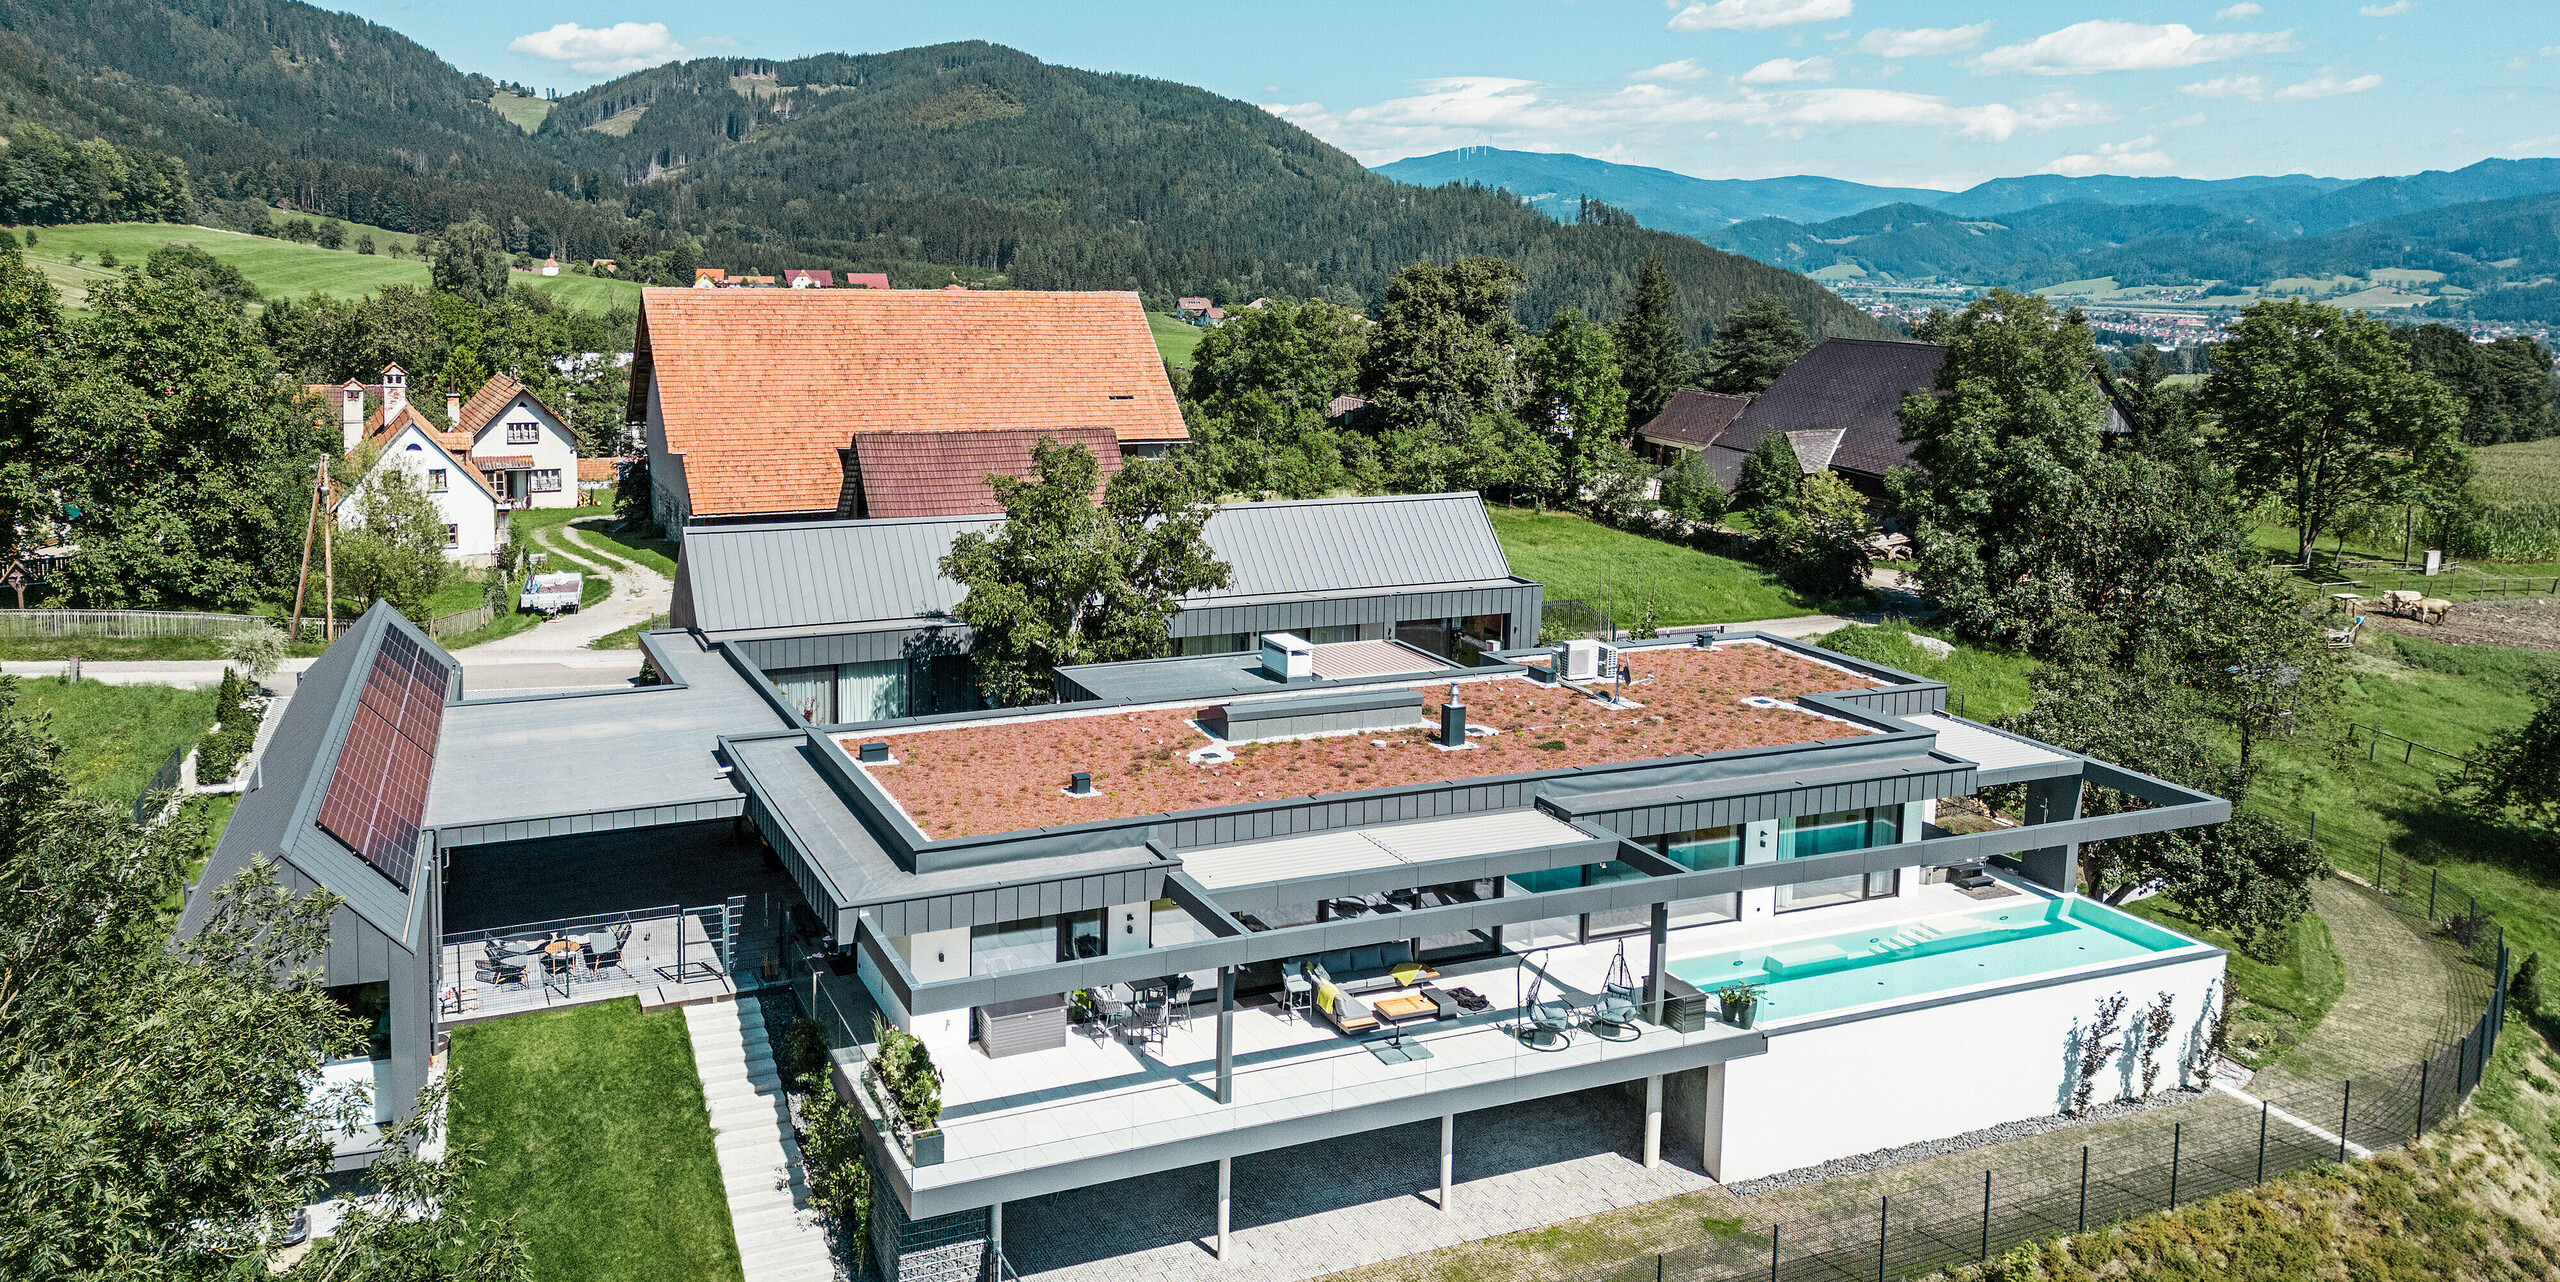 Pohled z dronu na impozantní rodinný dům s částmi budovy využívanými pro zemědělské účely, terasou a bazénem v rakouském Pogier. Tmavě šedé budovy rámuje úchvatná horská krajina. Nemovitost je prezentována střešním a fasádním obkladem PREFALZ v tmavě šedé barvě P.10, který zdůrazňuje jasné, moderní linie. Terasa a bazén nabízí luxusní venkovní obývací prostor s panoramatickým výhledem na okolní přírodu. Kombinace moderních stavebních prvků z PREFA a idylického umístění vytváří dokonalou symbiózu současného designu a přírodních krás.